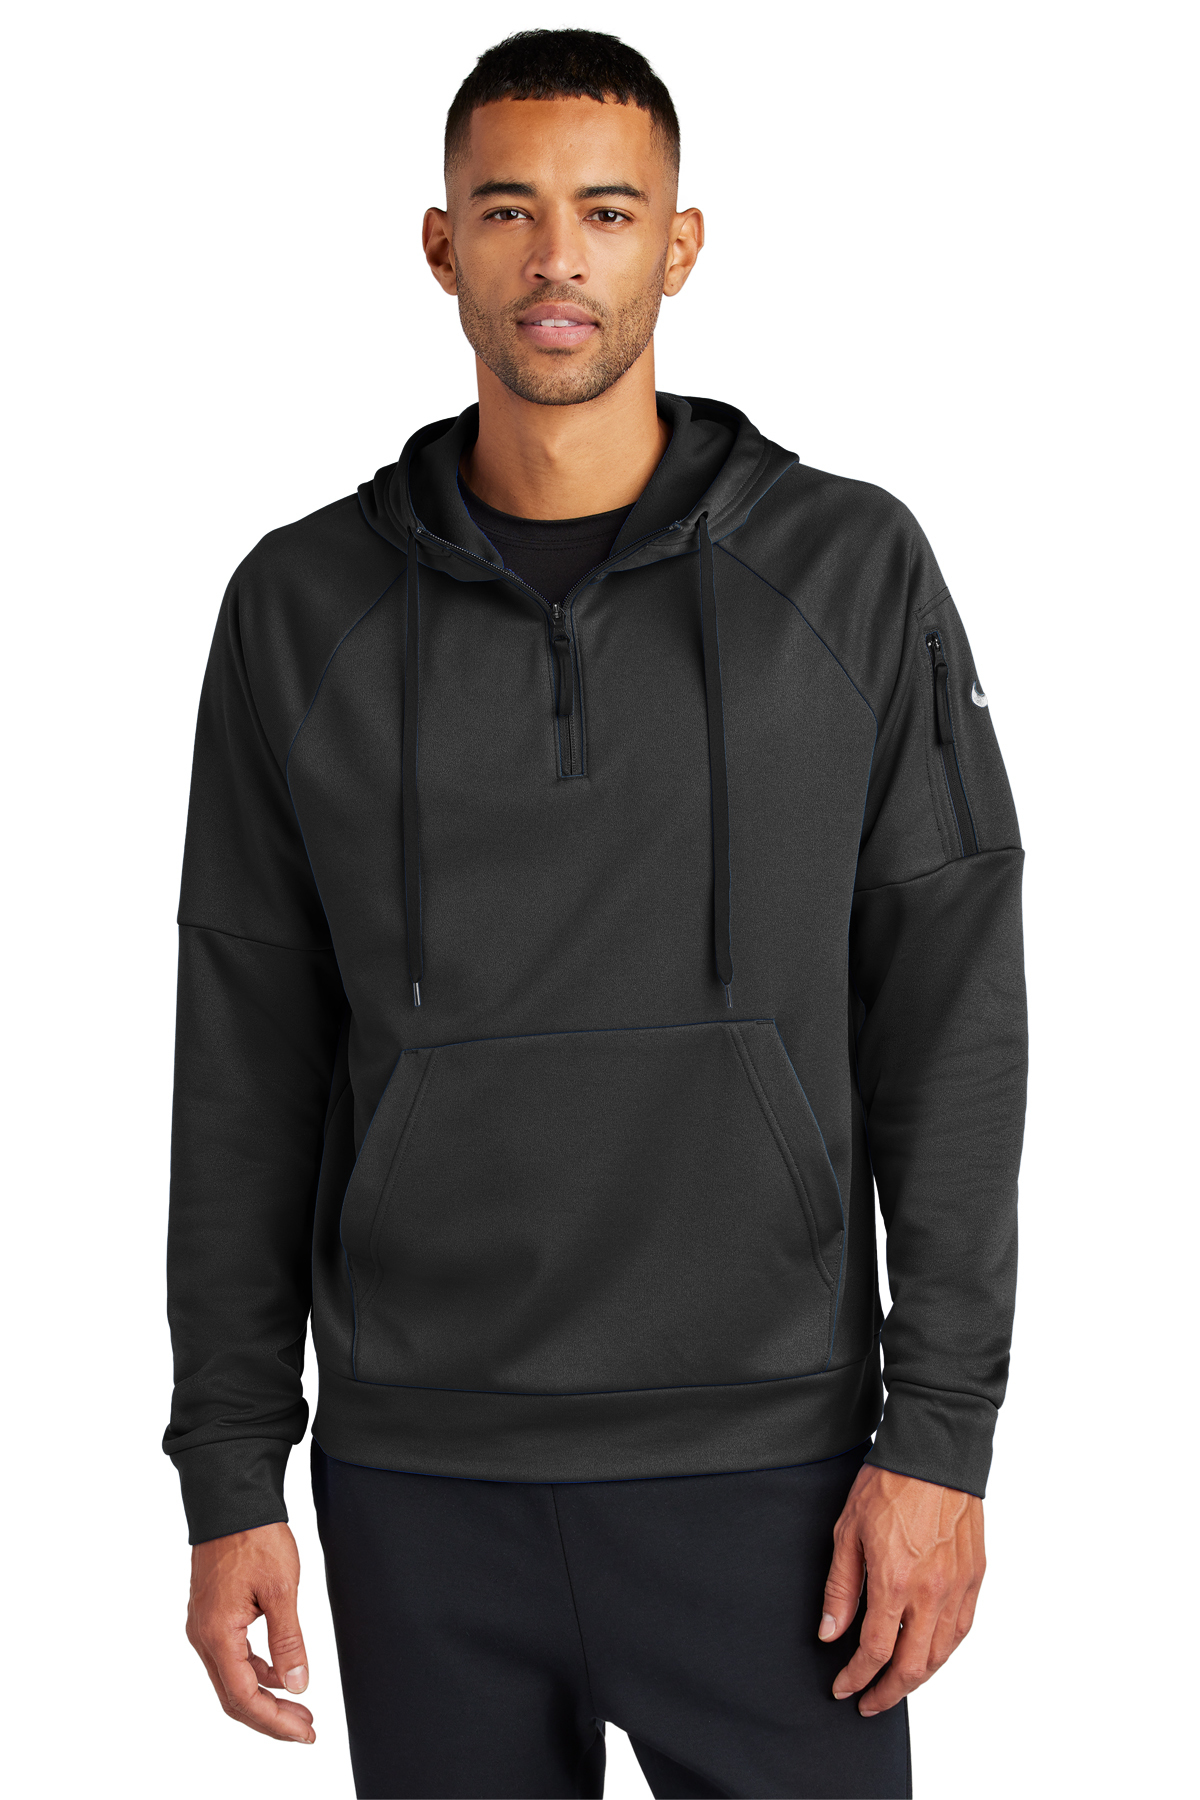 Nike Therma-FIT Pocket 1/4-Zip Fleece Hoodie, Product